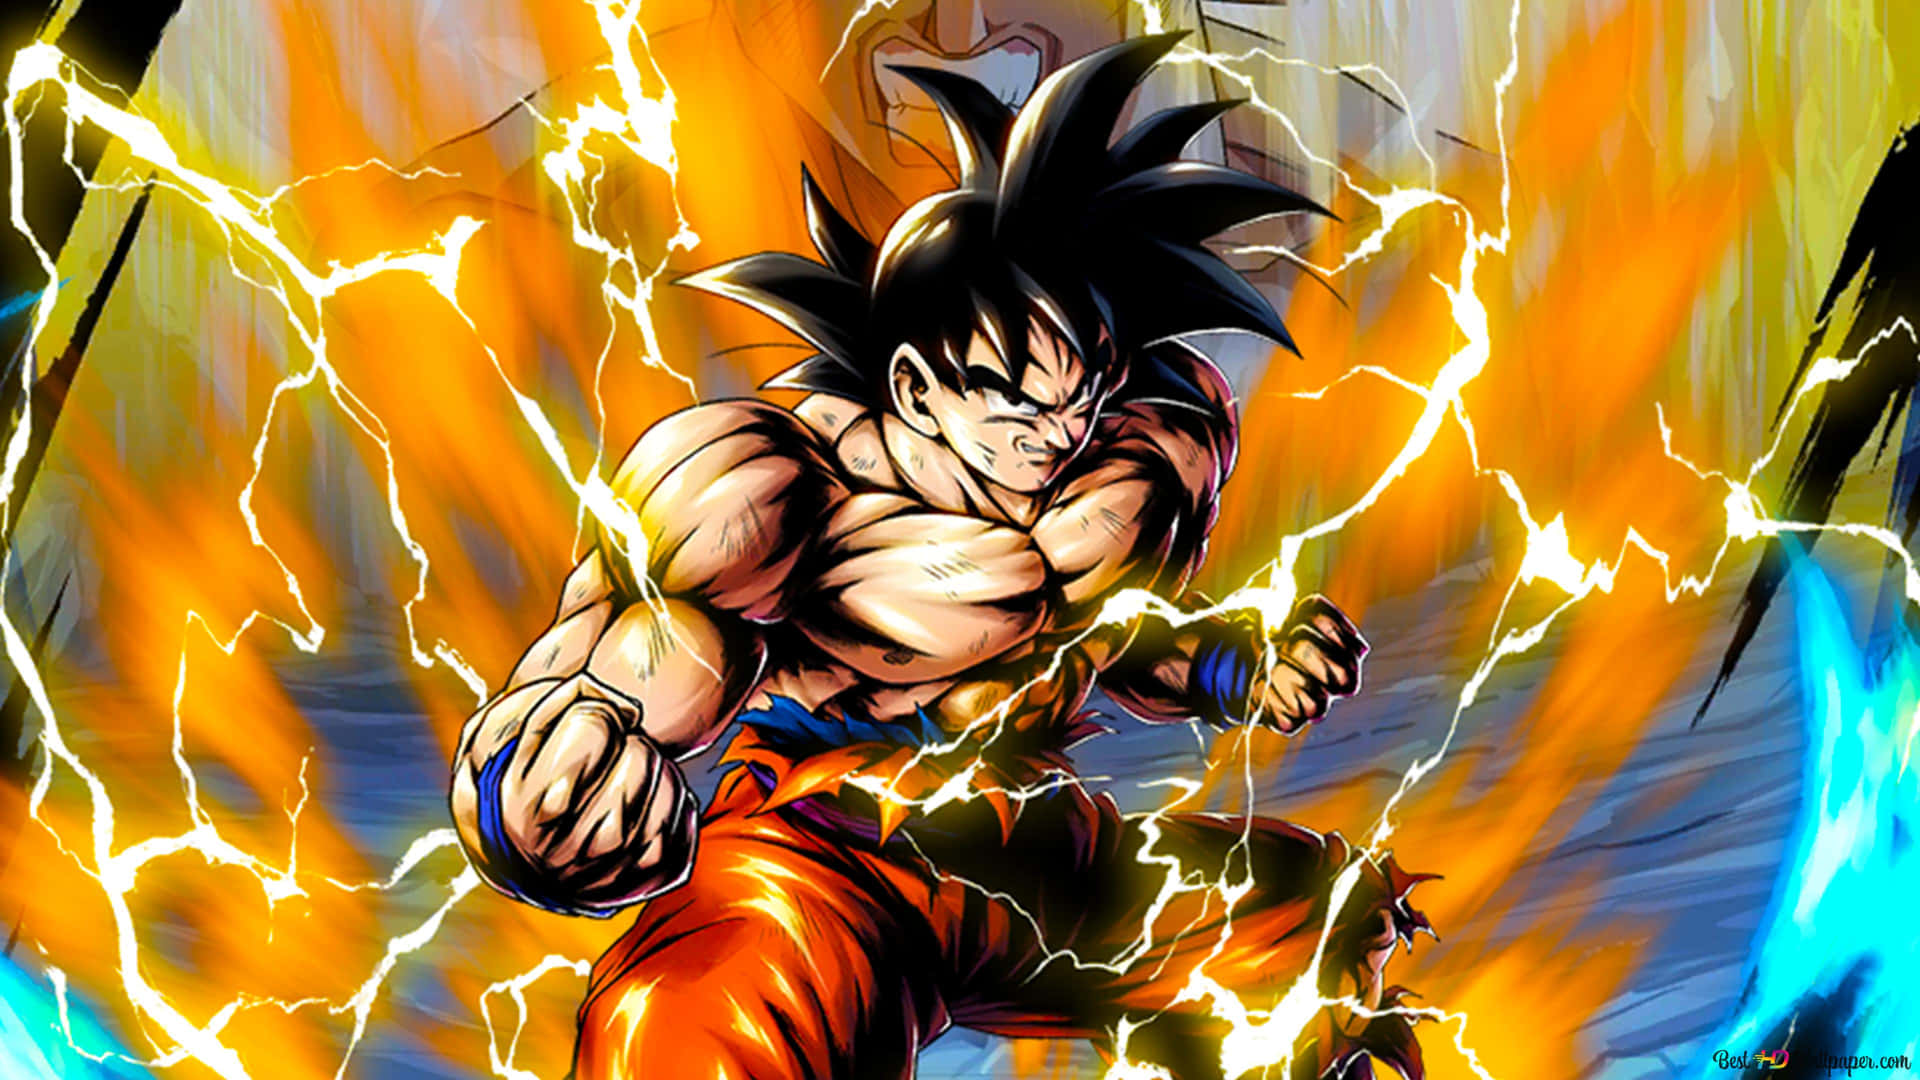 Imagende Goku De Dragon Ball Z Con Energía.